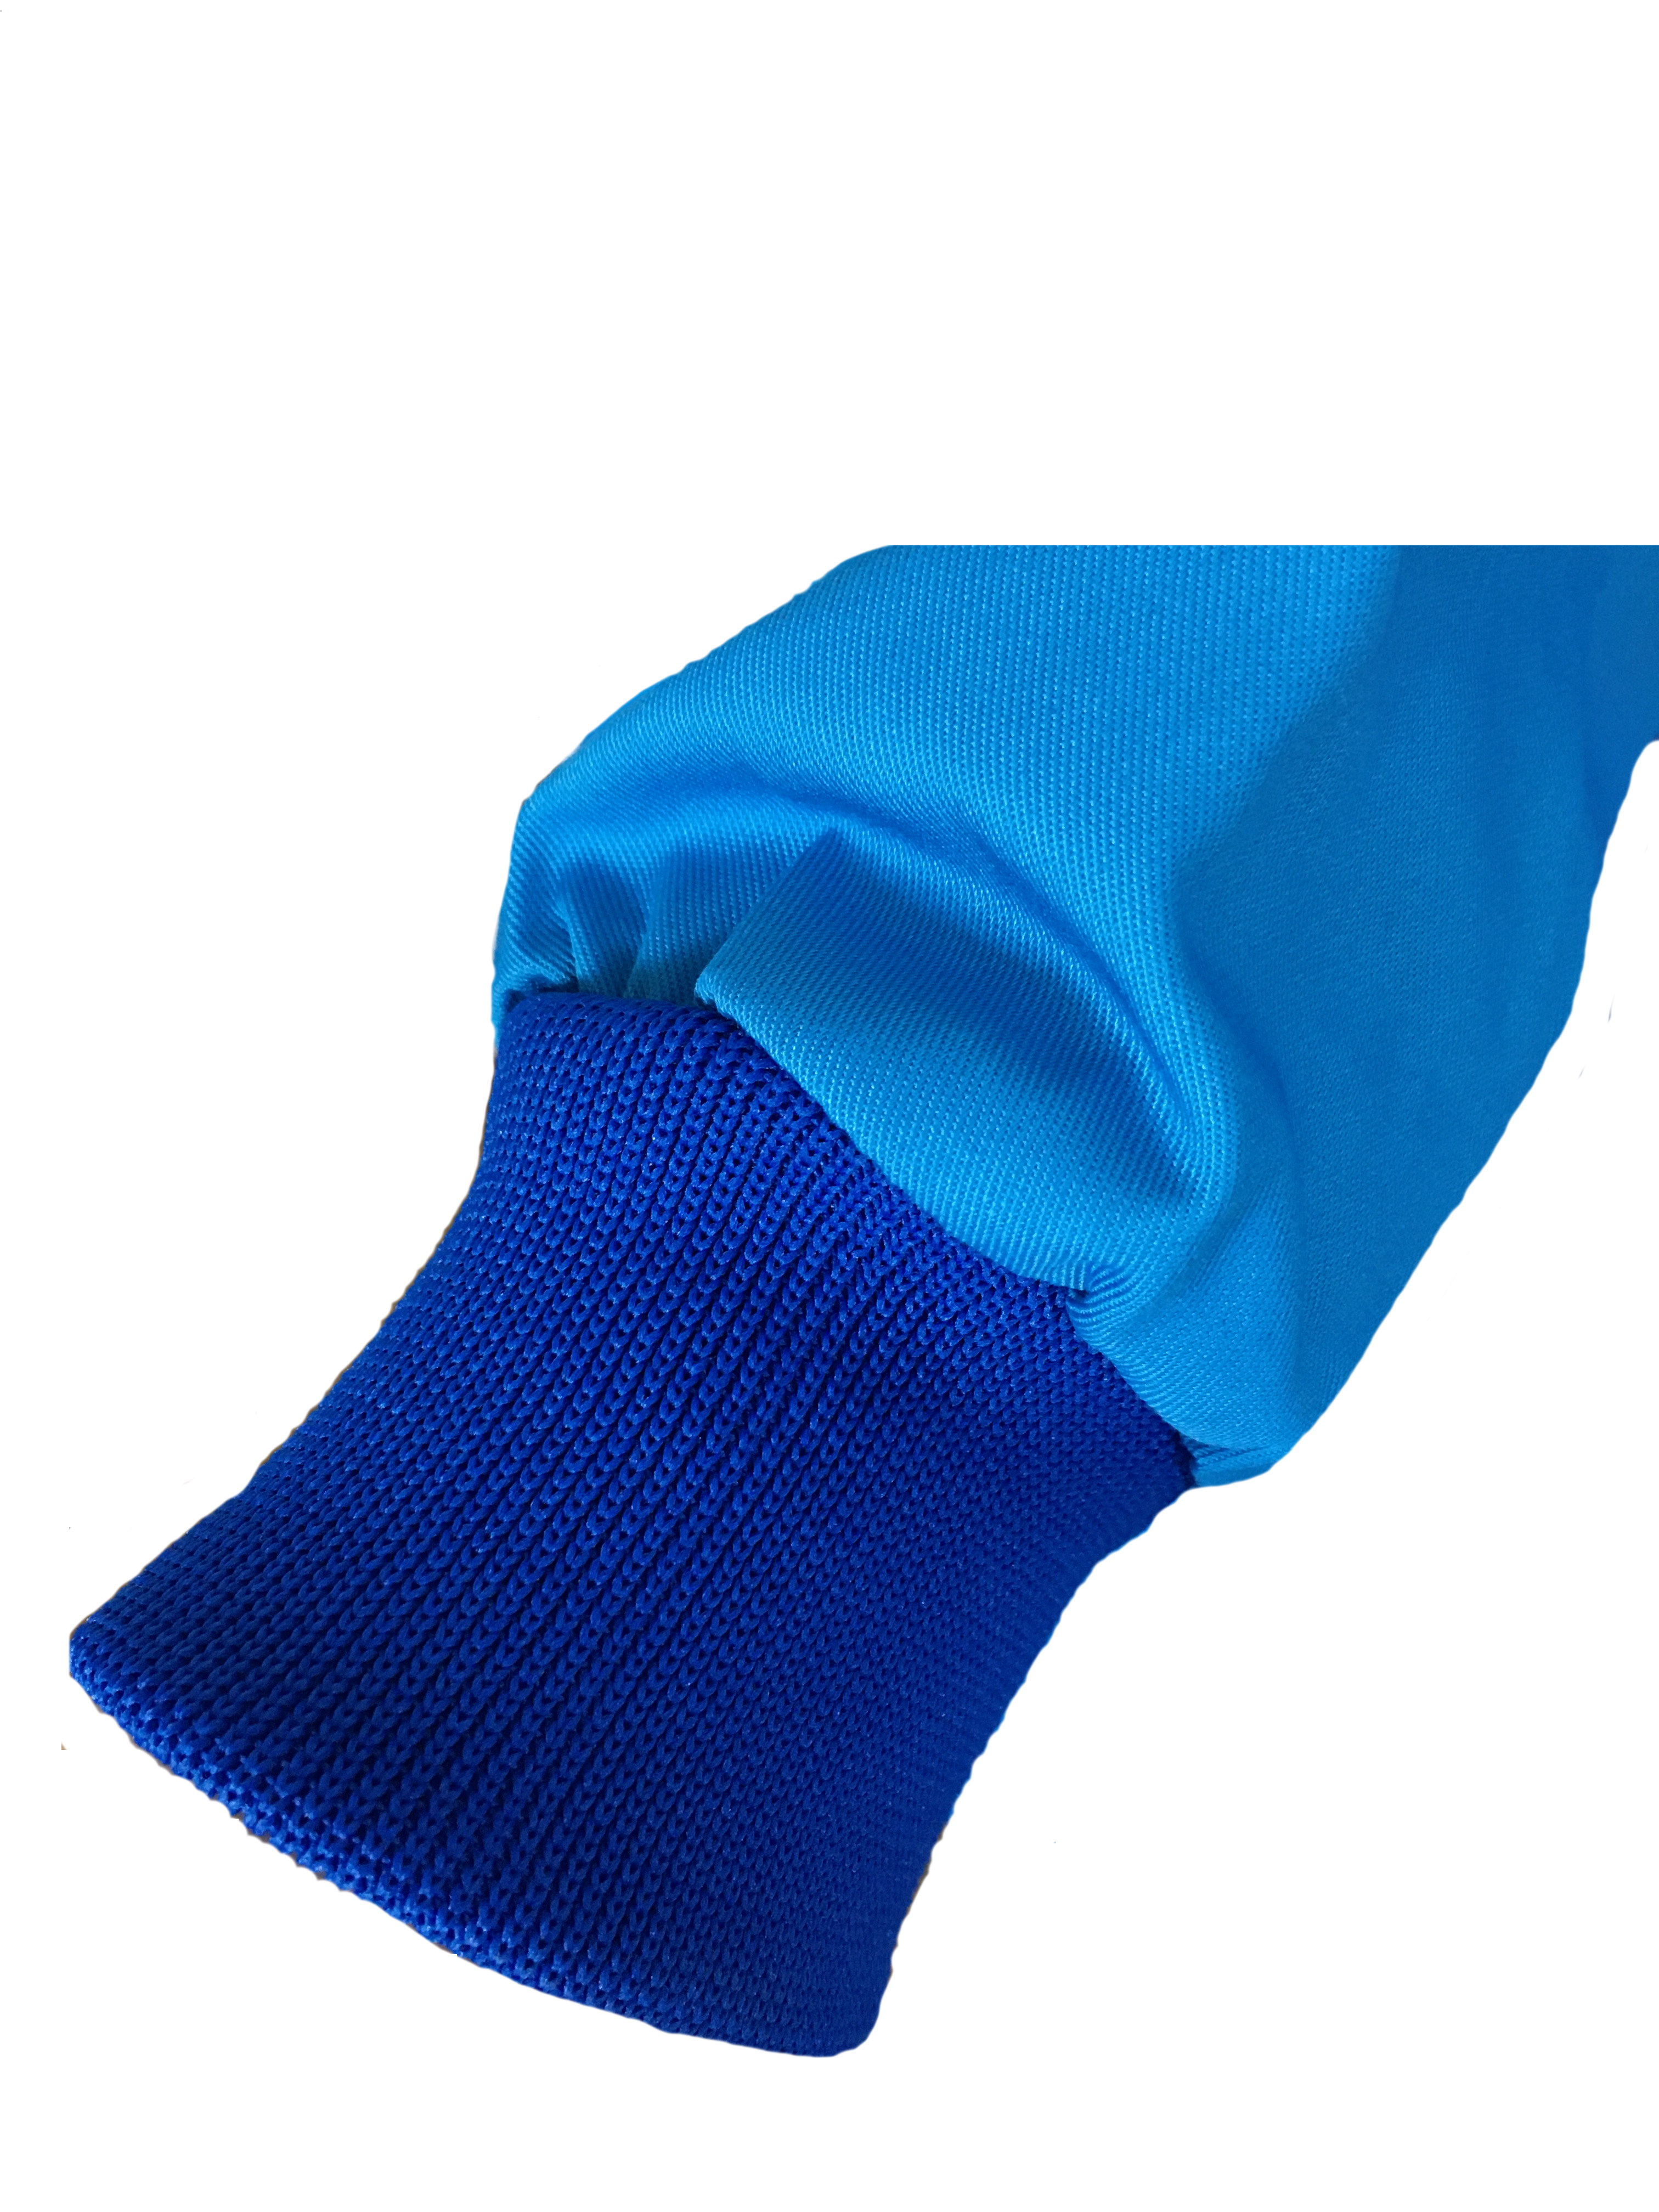 Wickelmantel mit Druckknöpfen 65% Polyester/35% Baumwolle  blau